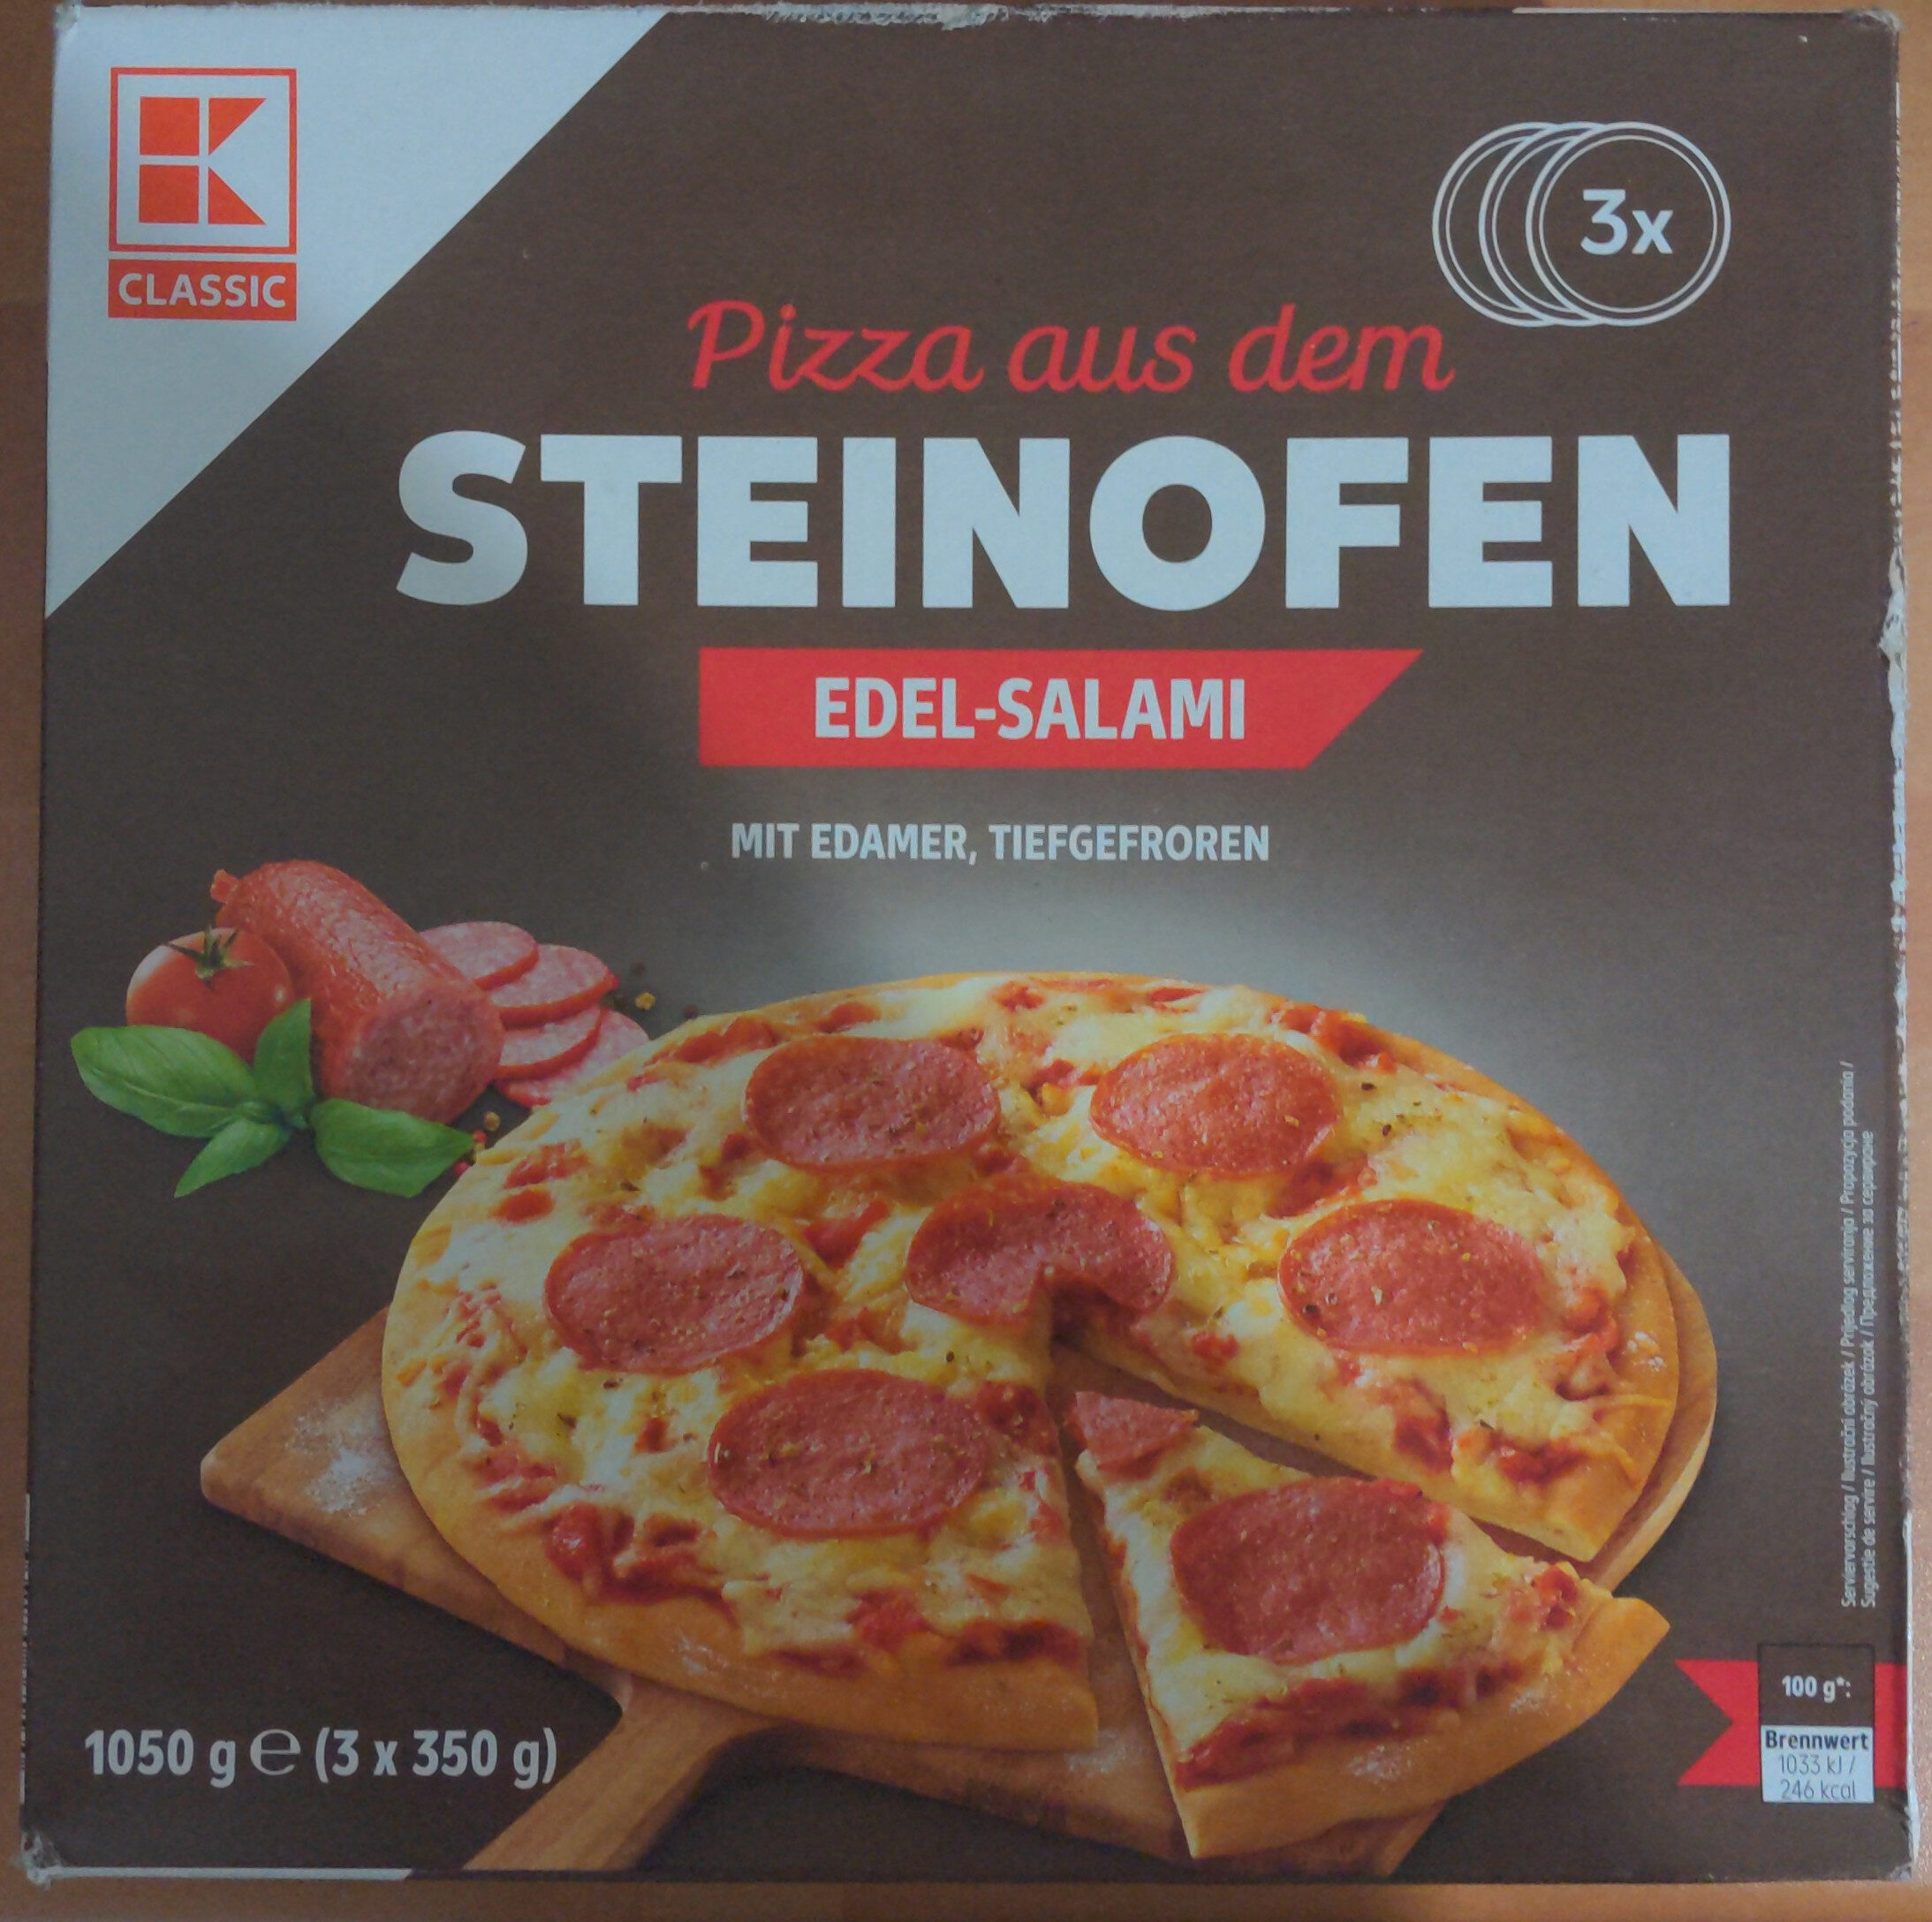 Pizza aus dem Steinofen Edel-Salami - Product - de